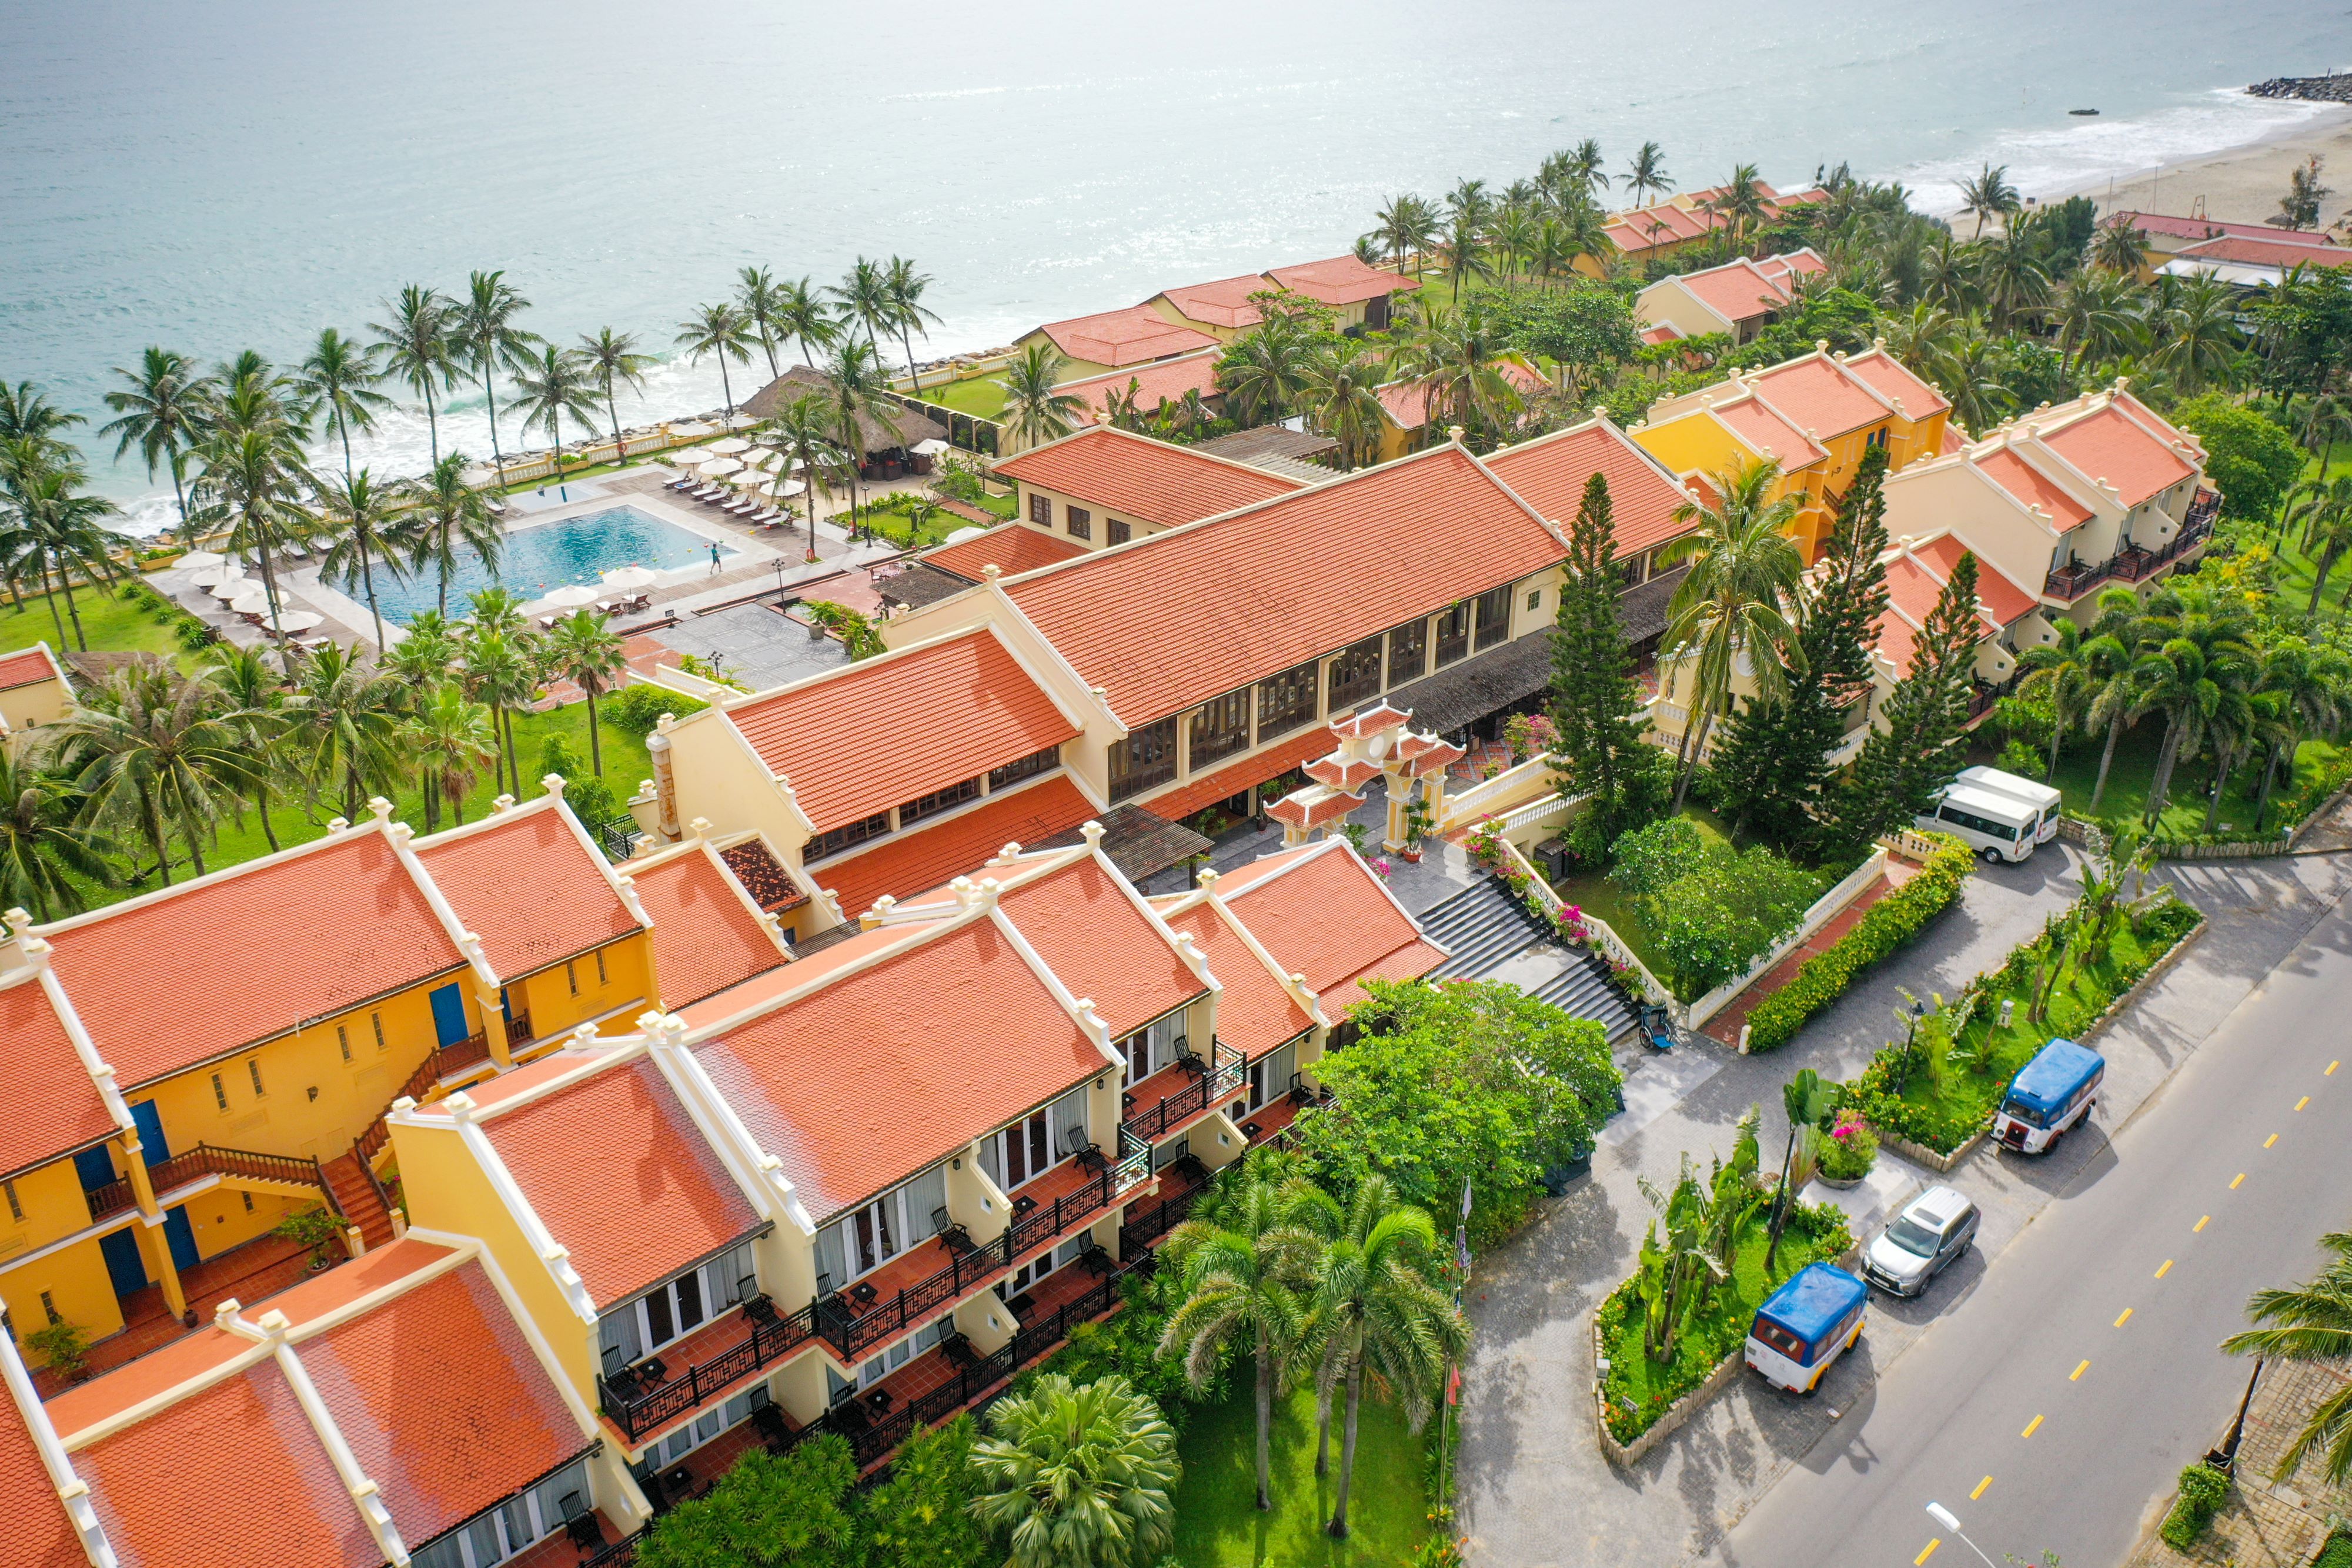 Victoria Hoi An Beach Resort & Spa